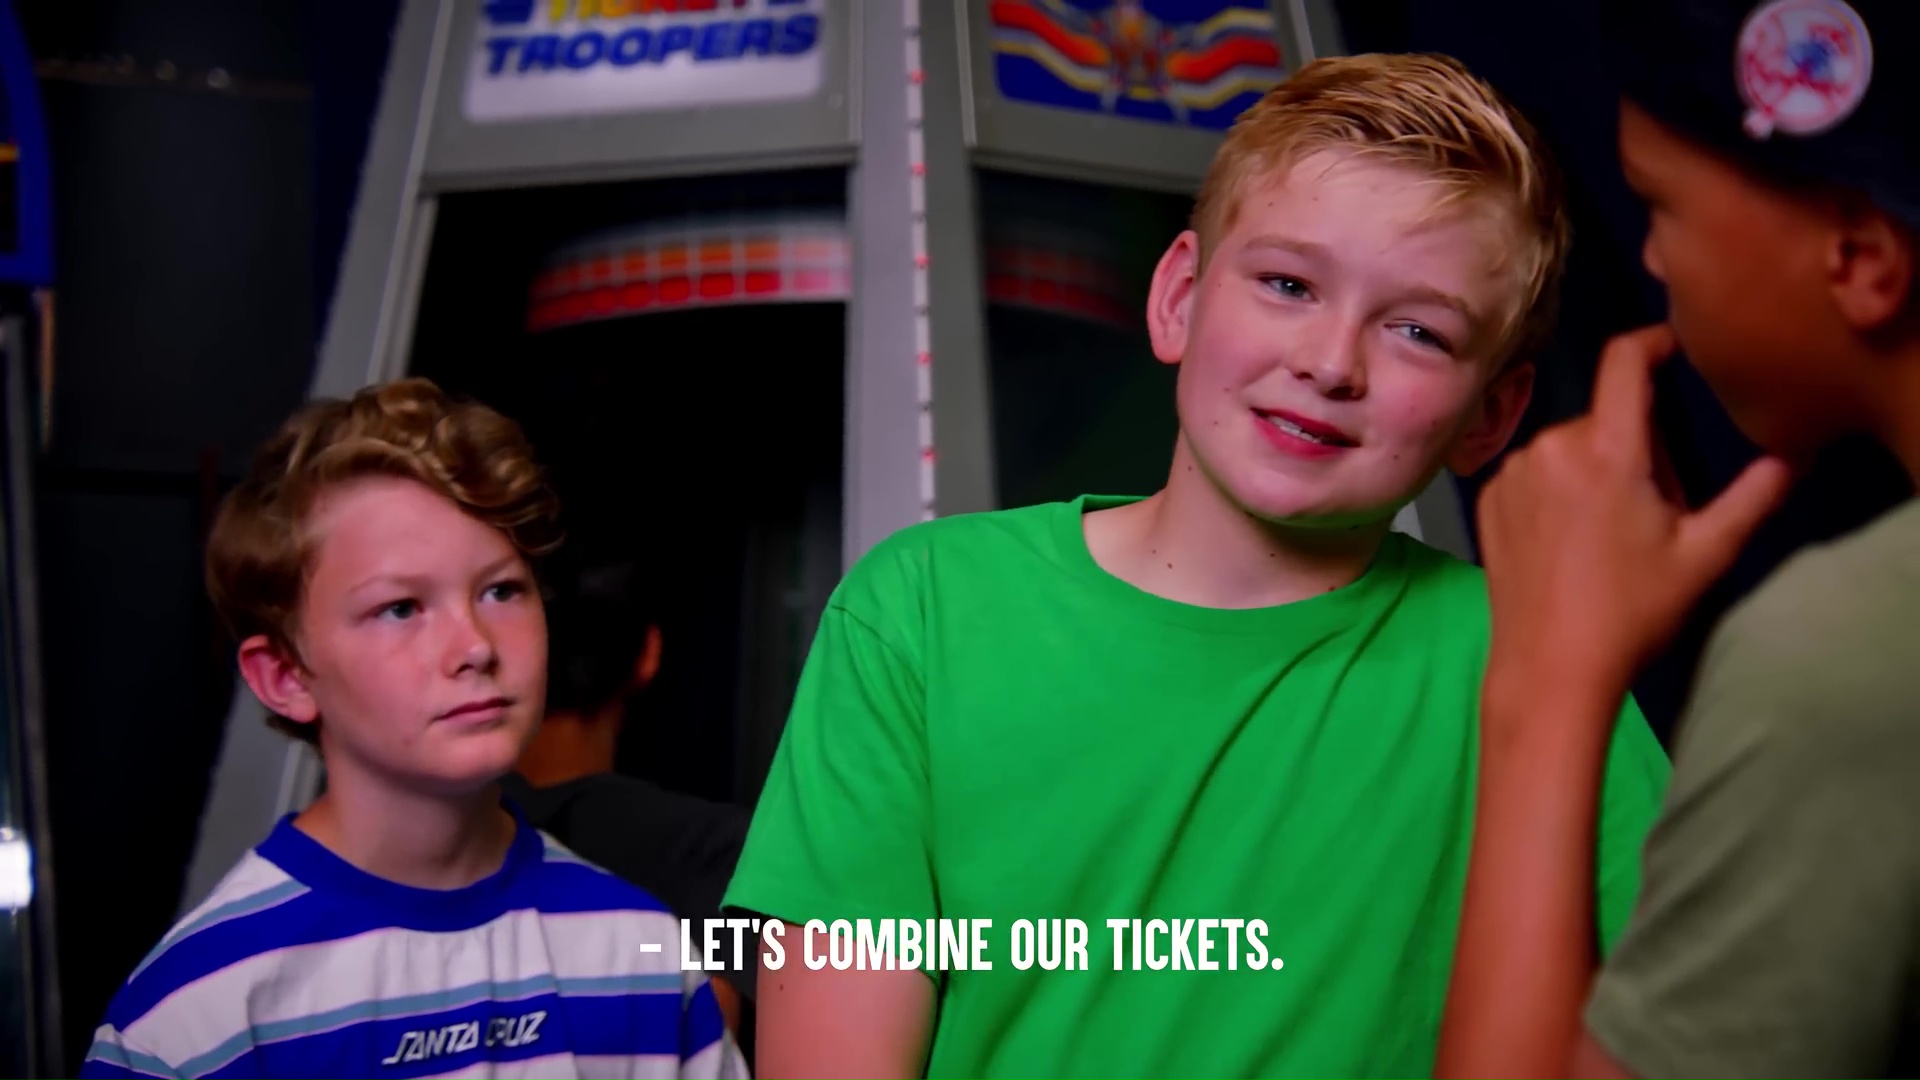 Kaido Roberts in Dhar Mann, episode: Kid Steals Tickets at Fun Center